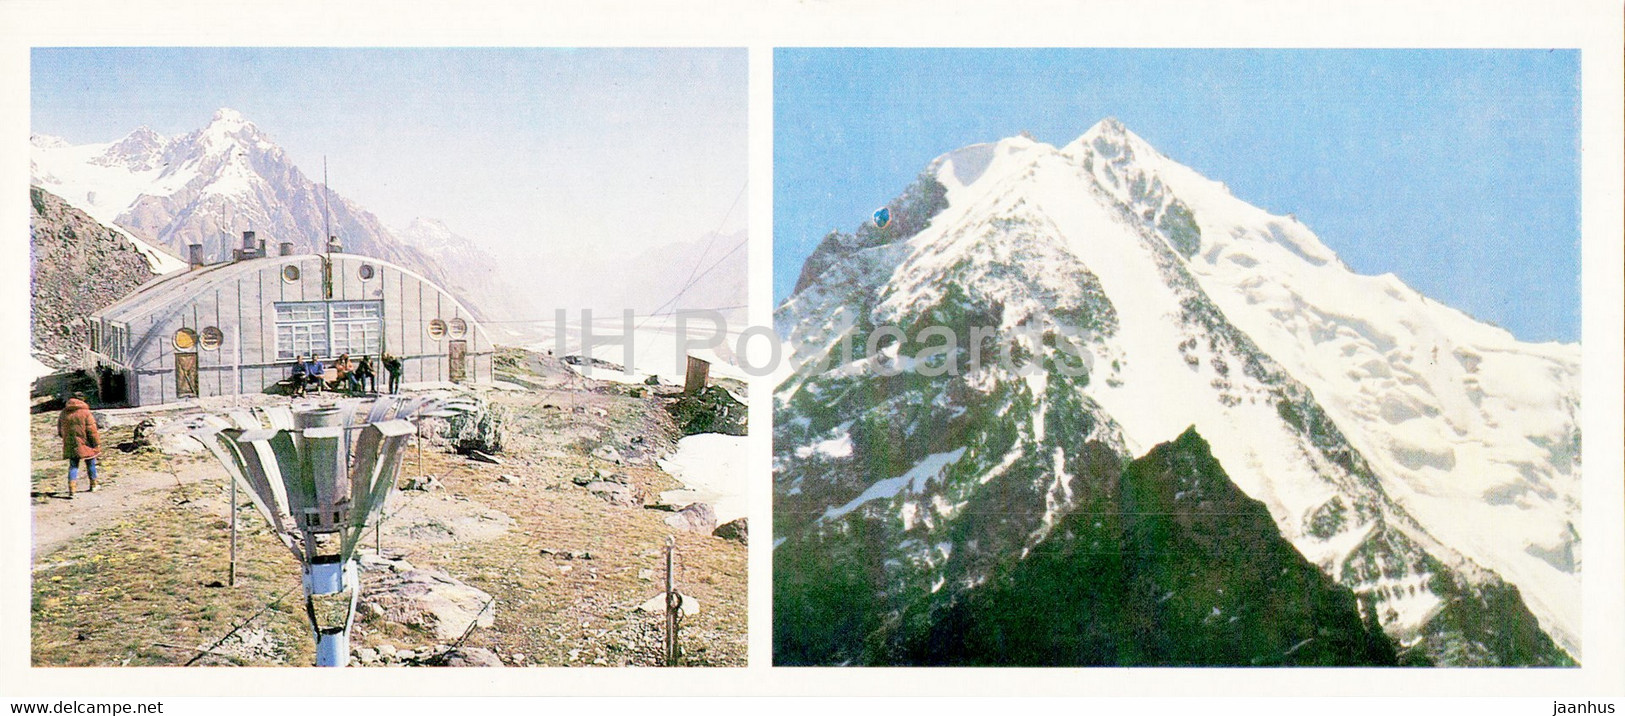 Pamir - Gorno-Badakhshan - Gorbunov Meteo Station At Fedchenko Glacier - 1985 - Tajikistan USSR - Unused - Tadzjikistan